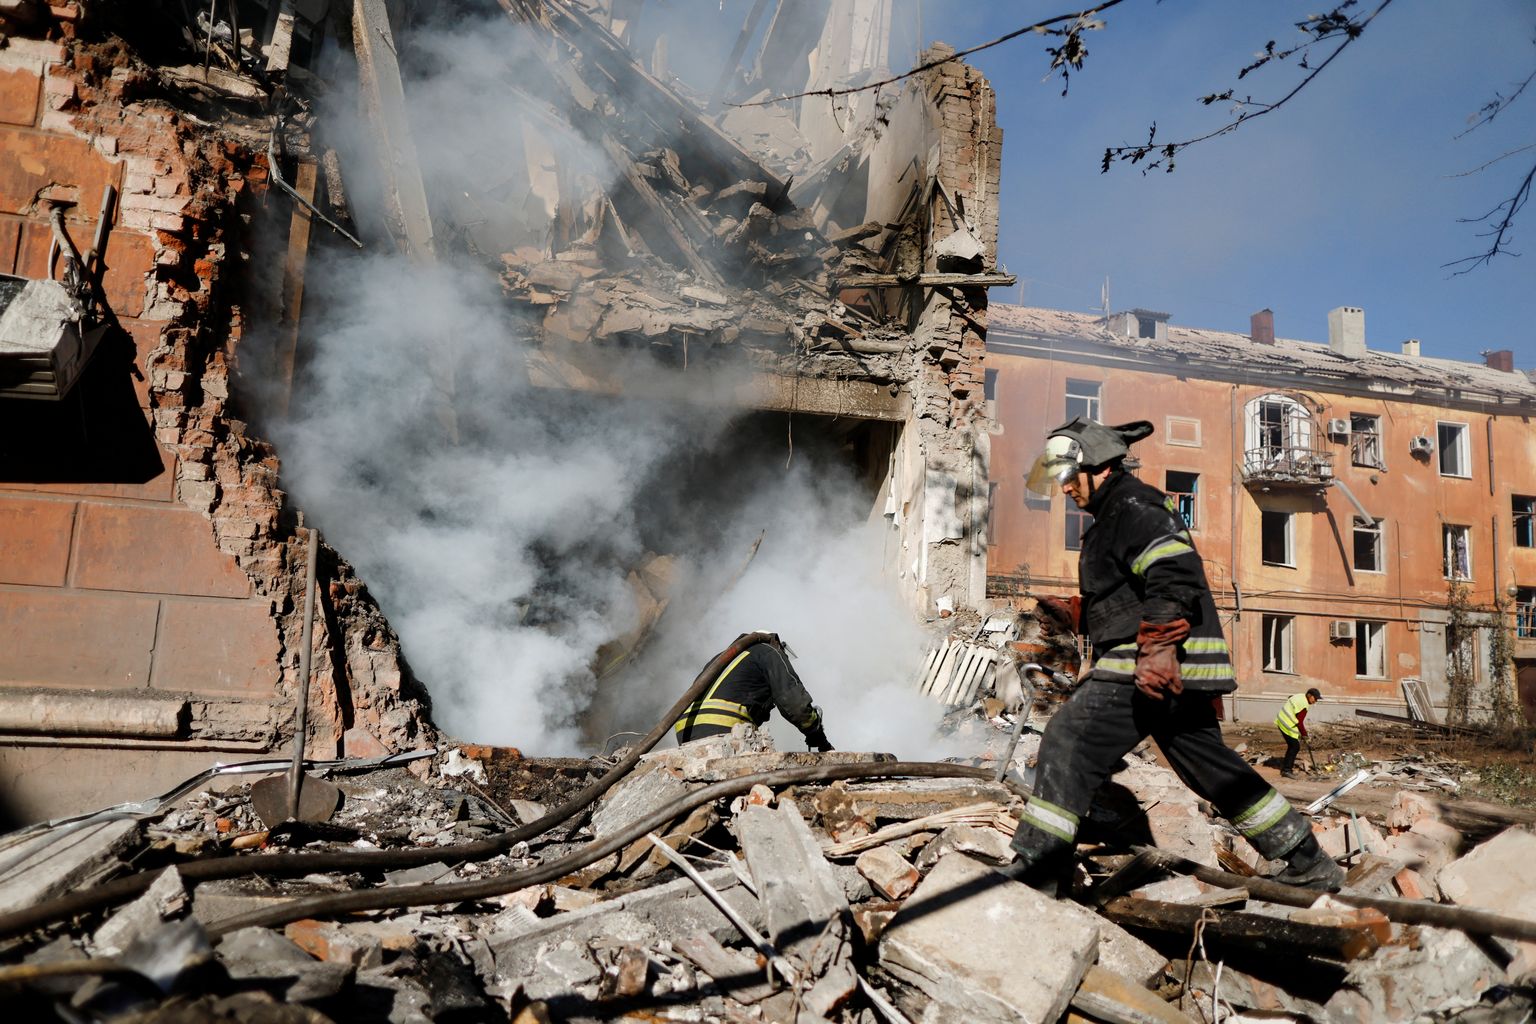 Venemaa rünnakus kannatada saanud hoone Ukrainas Donetski oblastis Slovjanskis. Foto on tehtud 7. septembril 2022